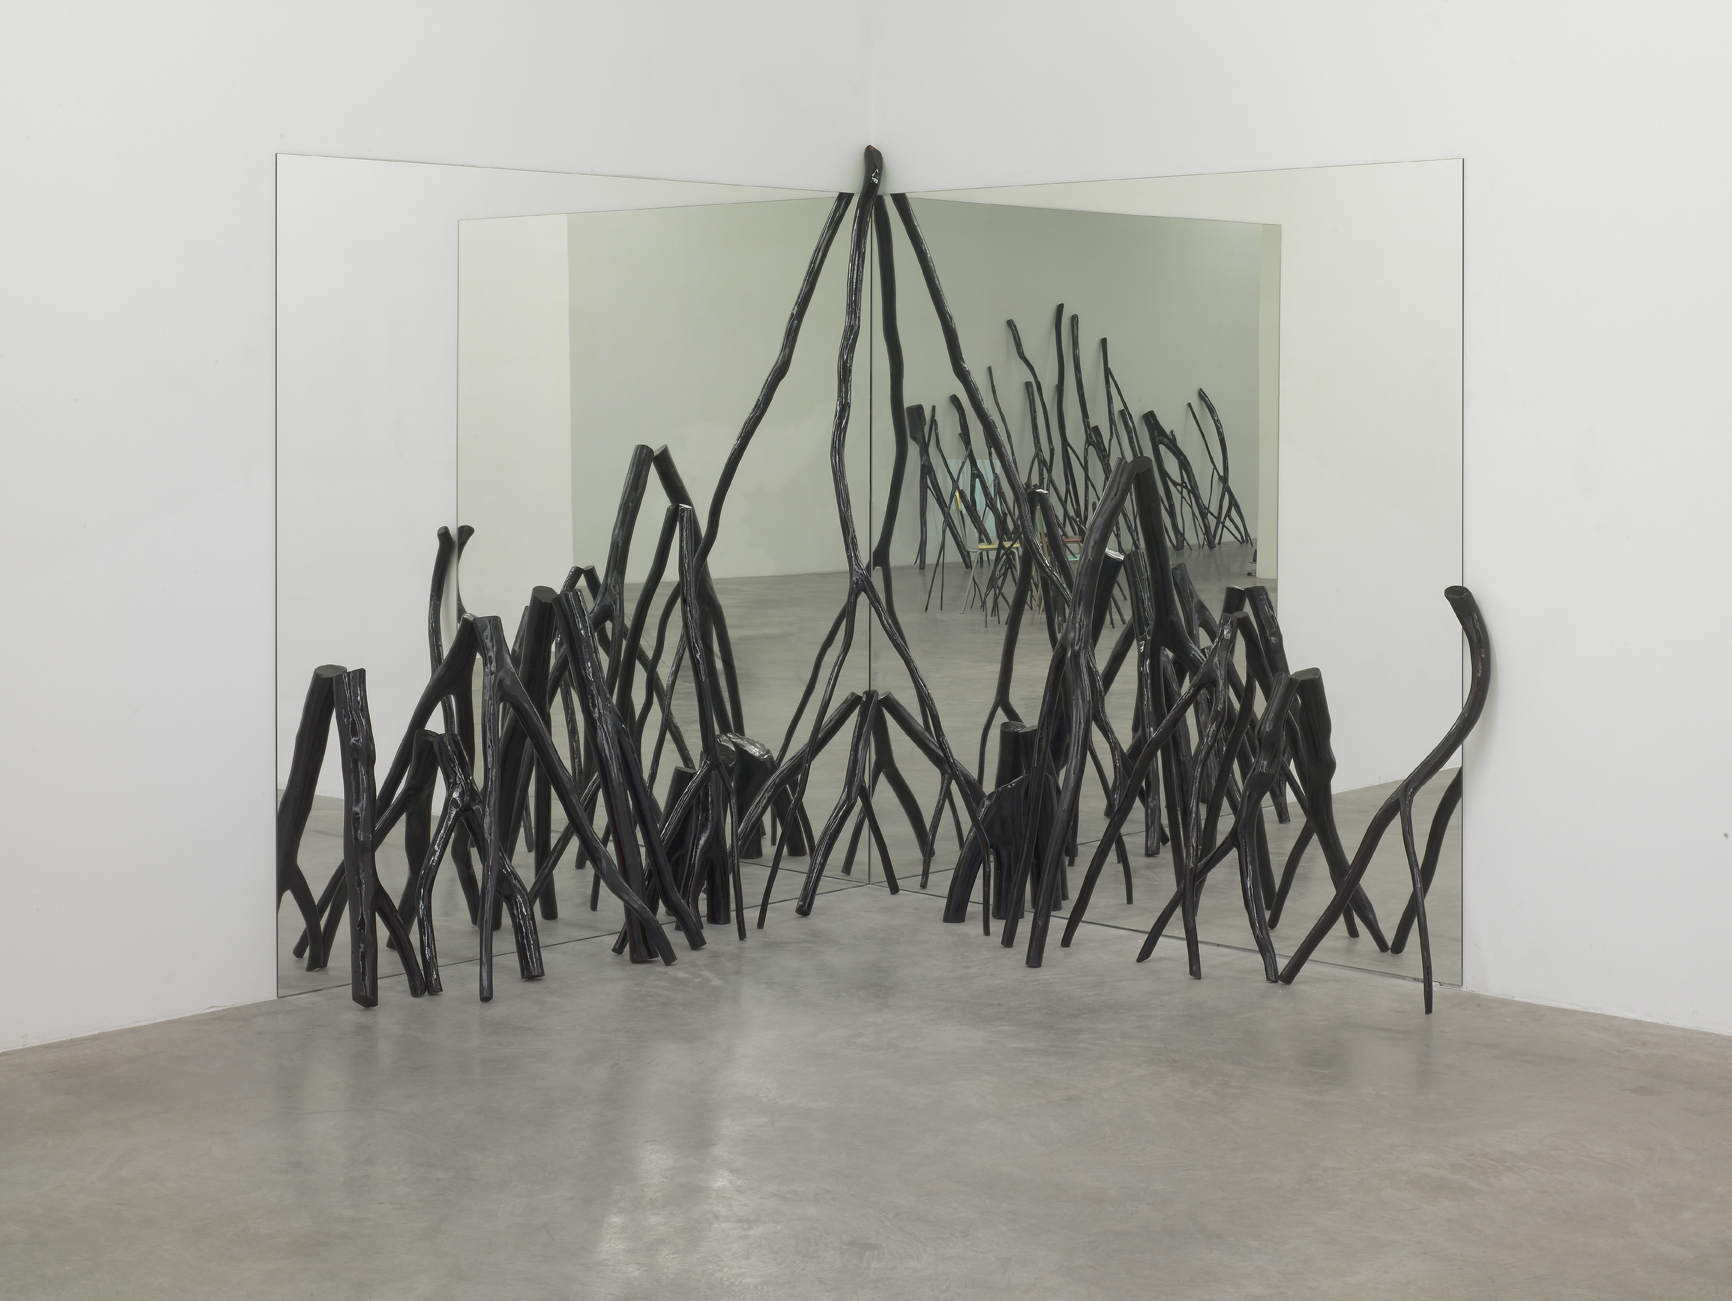 Gâtons la chaise – Galerie Verney Caron, 2009